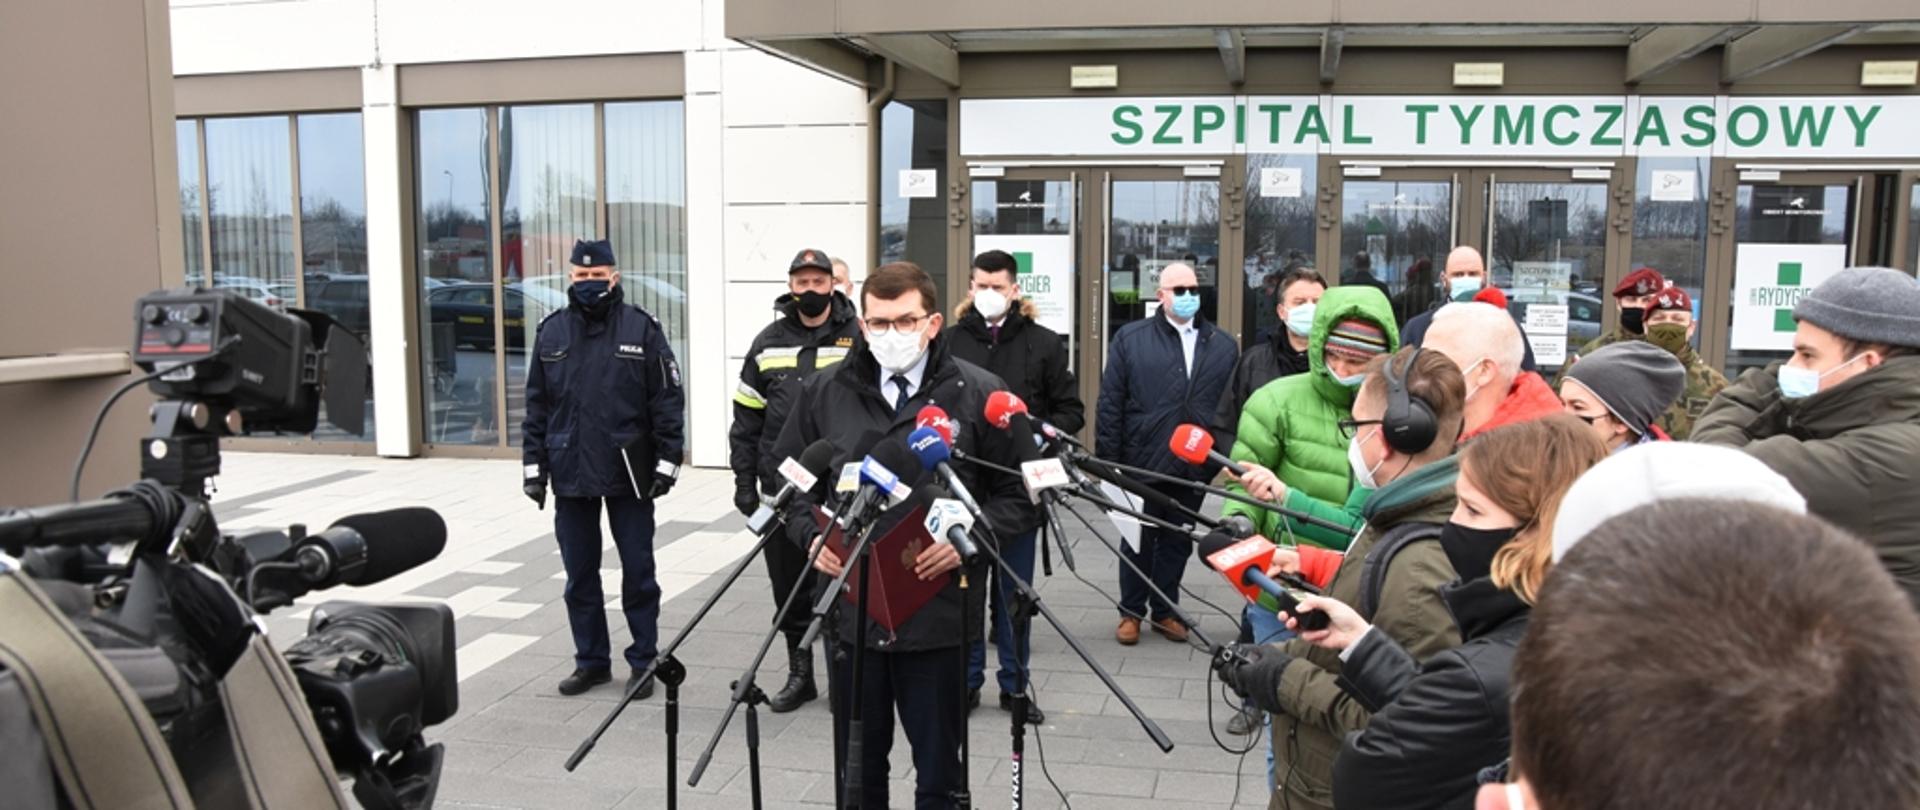 Konferencja Wojewody, Komendanta Wojewódzkiego PSP i innych z dziennikarzami przed szpitalem tymczasowym